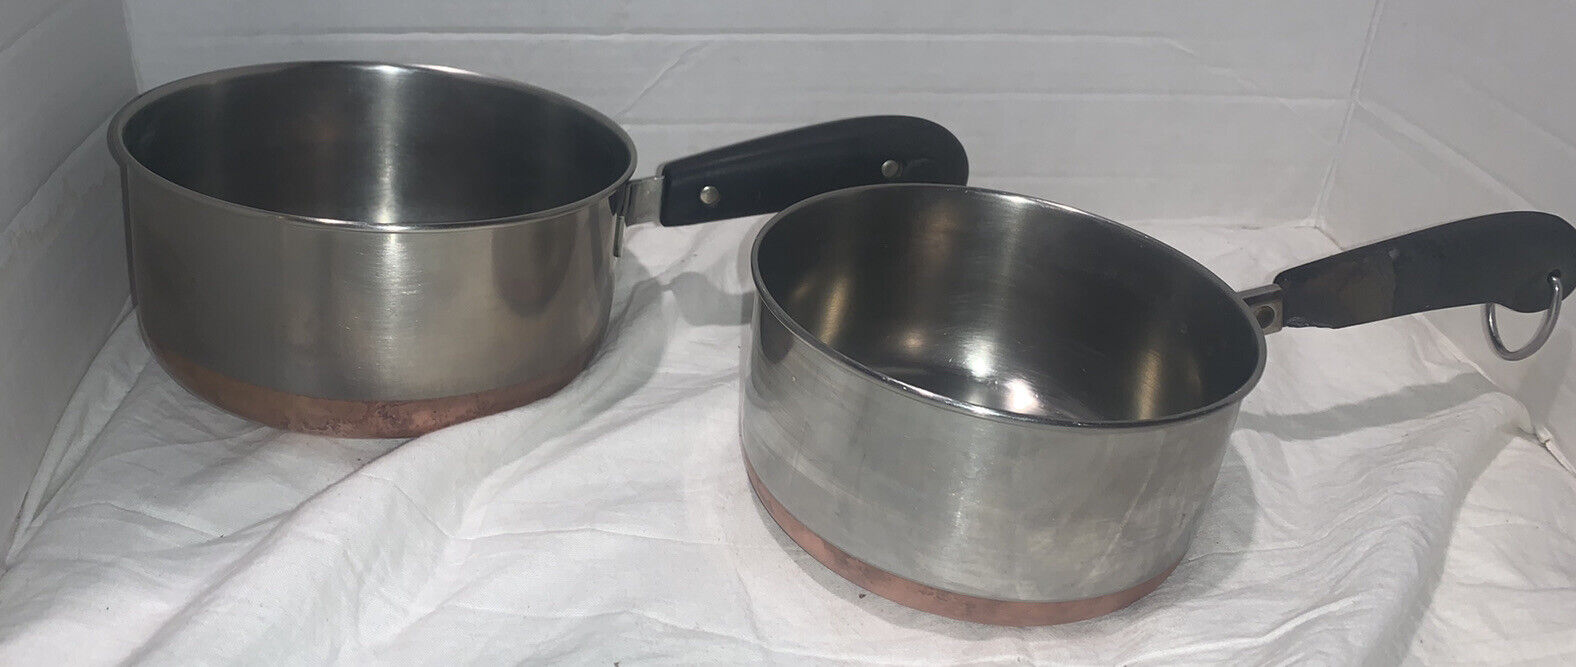 Vintage Revere Ware 1801 Copper Bottom Cookware Set Of 2 Pots 1 Qt 2 QT